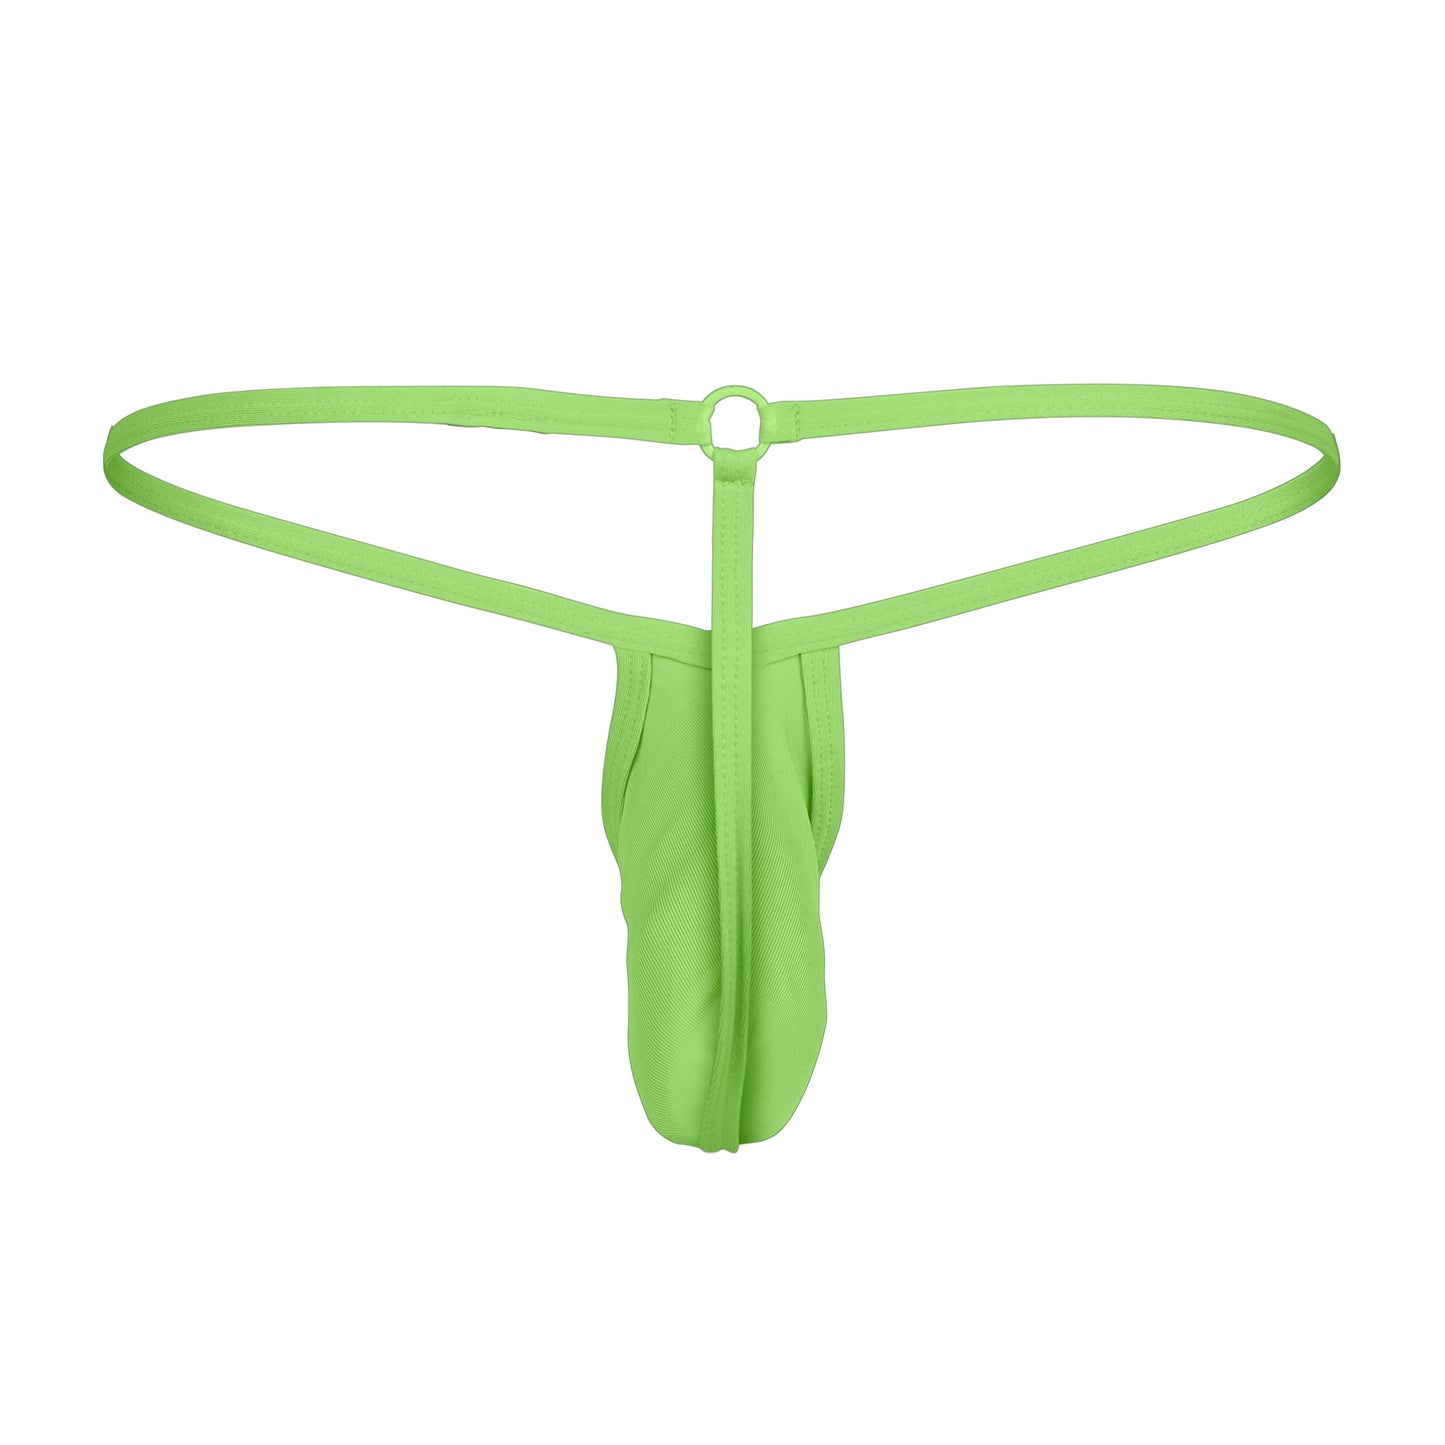 CUT4MEN - C4M09- LoopString Pouch Men Underwear - NEON Green - 2 Sizes - 1 Piece